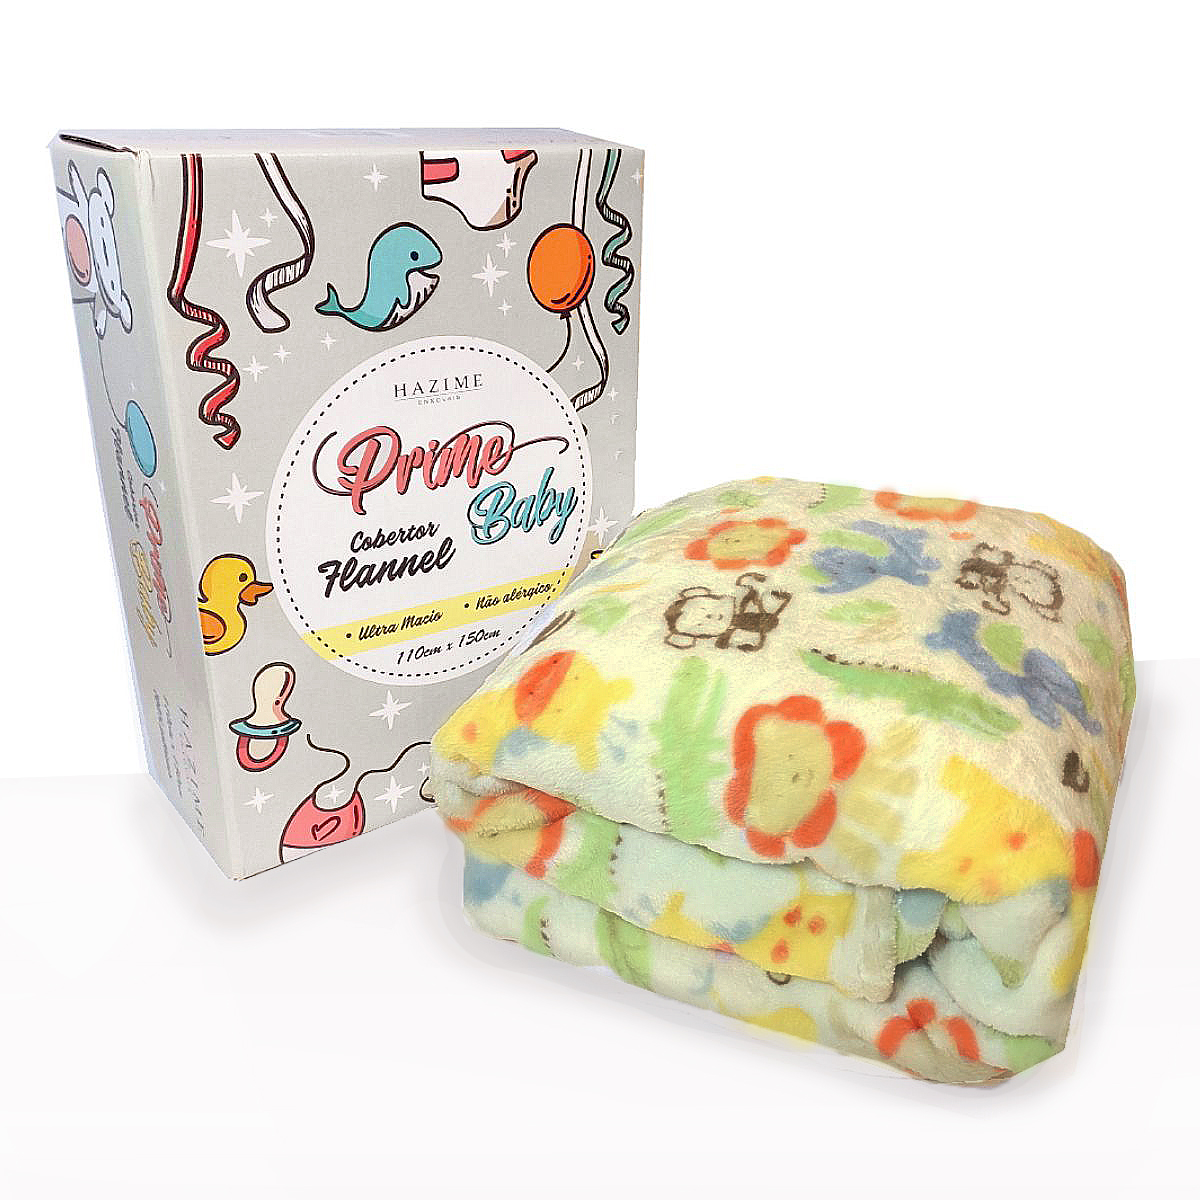 Cobertor Bebe Microfibra Prime 110 x 150cm Safari Bege - A sua loja  infantil em um clique! - Babyzone.com.br